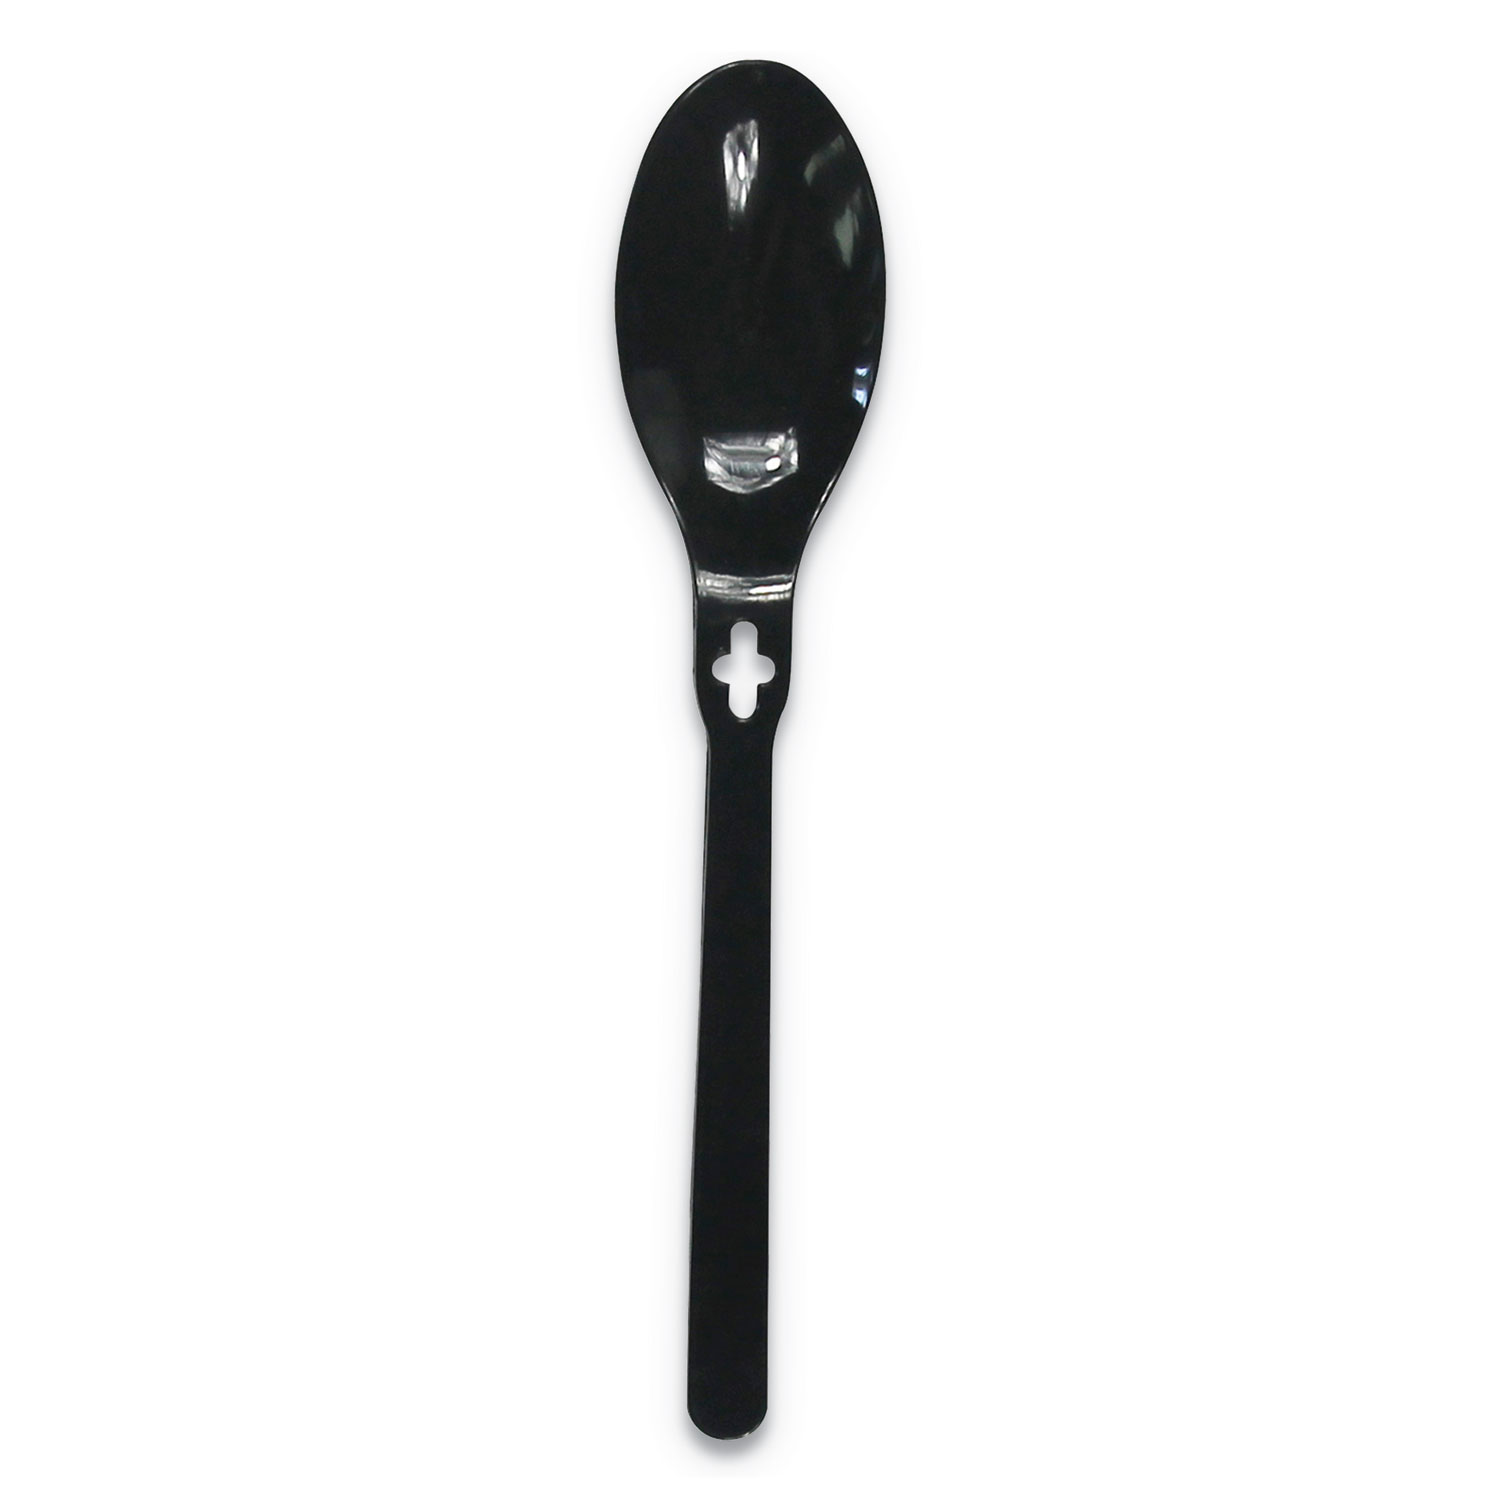 Spoon WeGo PS, Spoon, Black, 1000/Carton